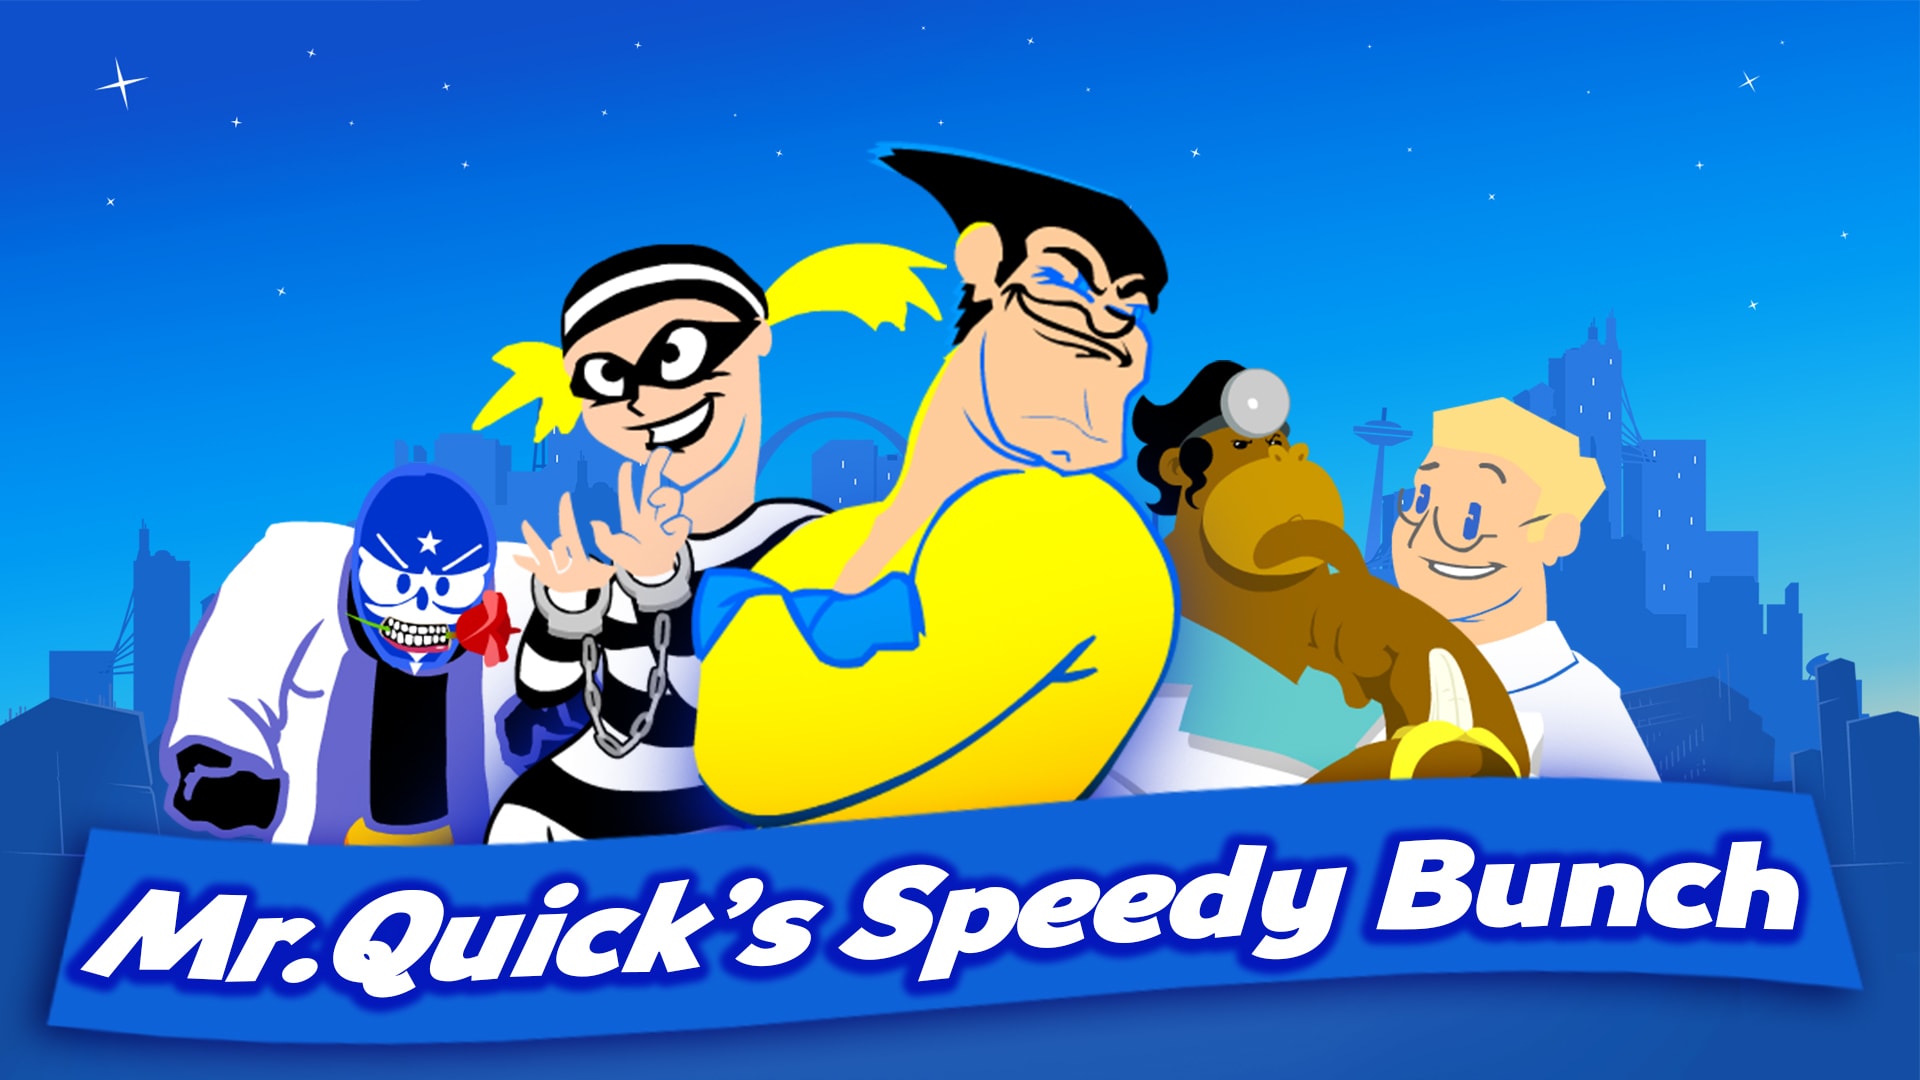 SpeedRunners: Mr. Quick's Speedy Bunch